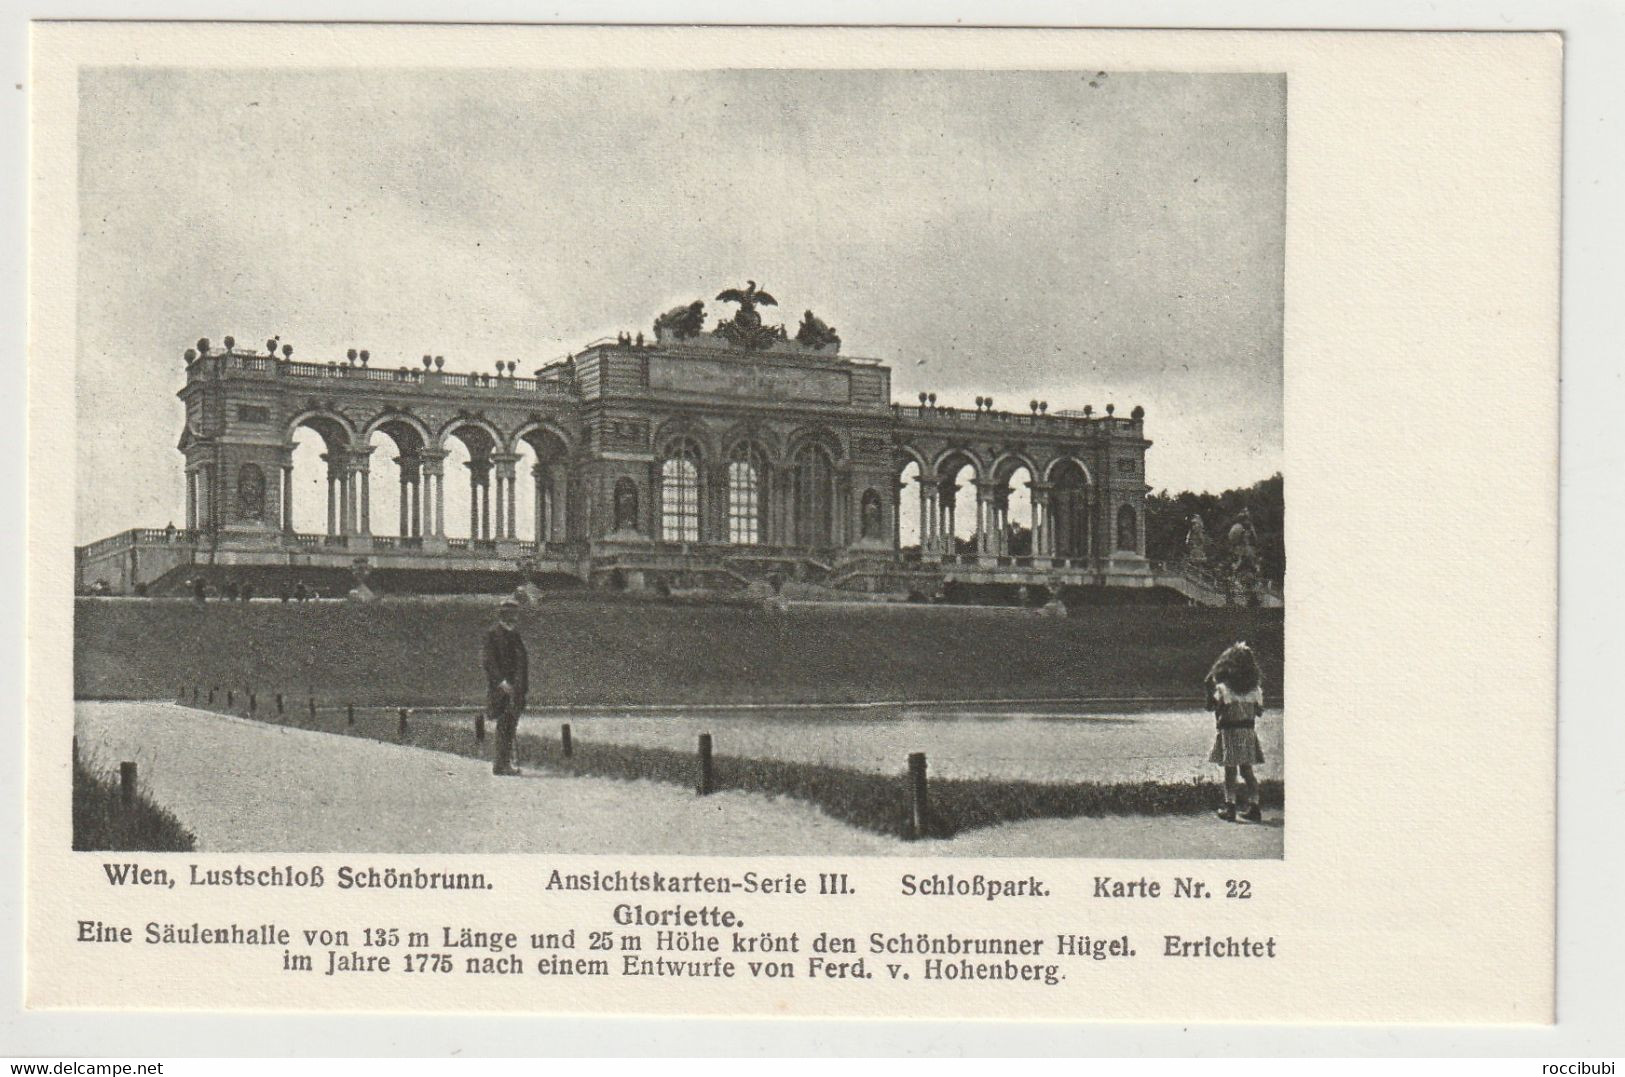 Wien, Lustschloß Schönbrunn, Österreich - Schönbrunn Palace